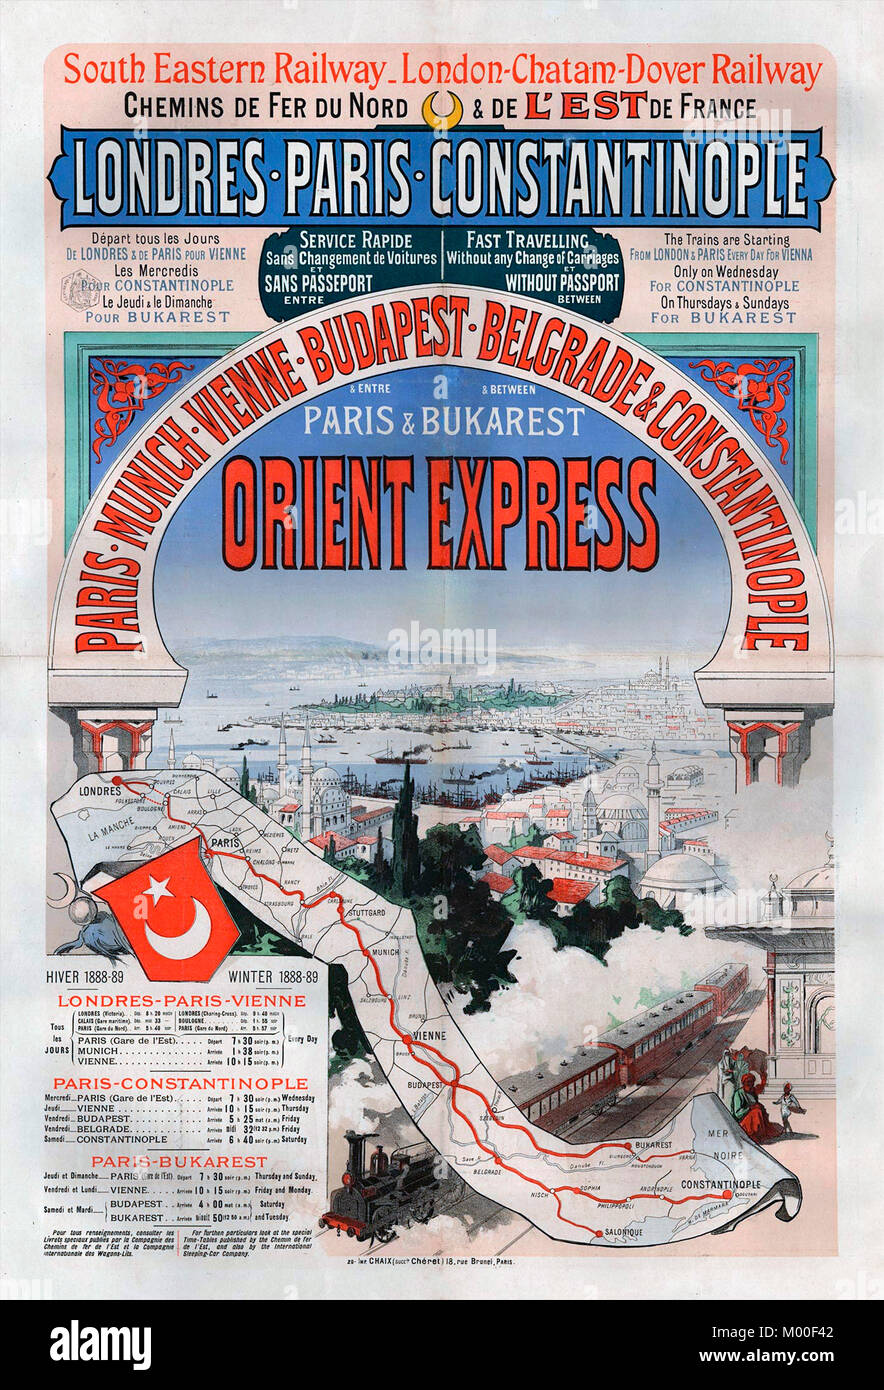 Affiche publicitaire de l'Orient Express voyage entre Londres et Constantinople (Istanbul) en 1888. Banque D'Images